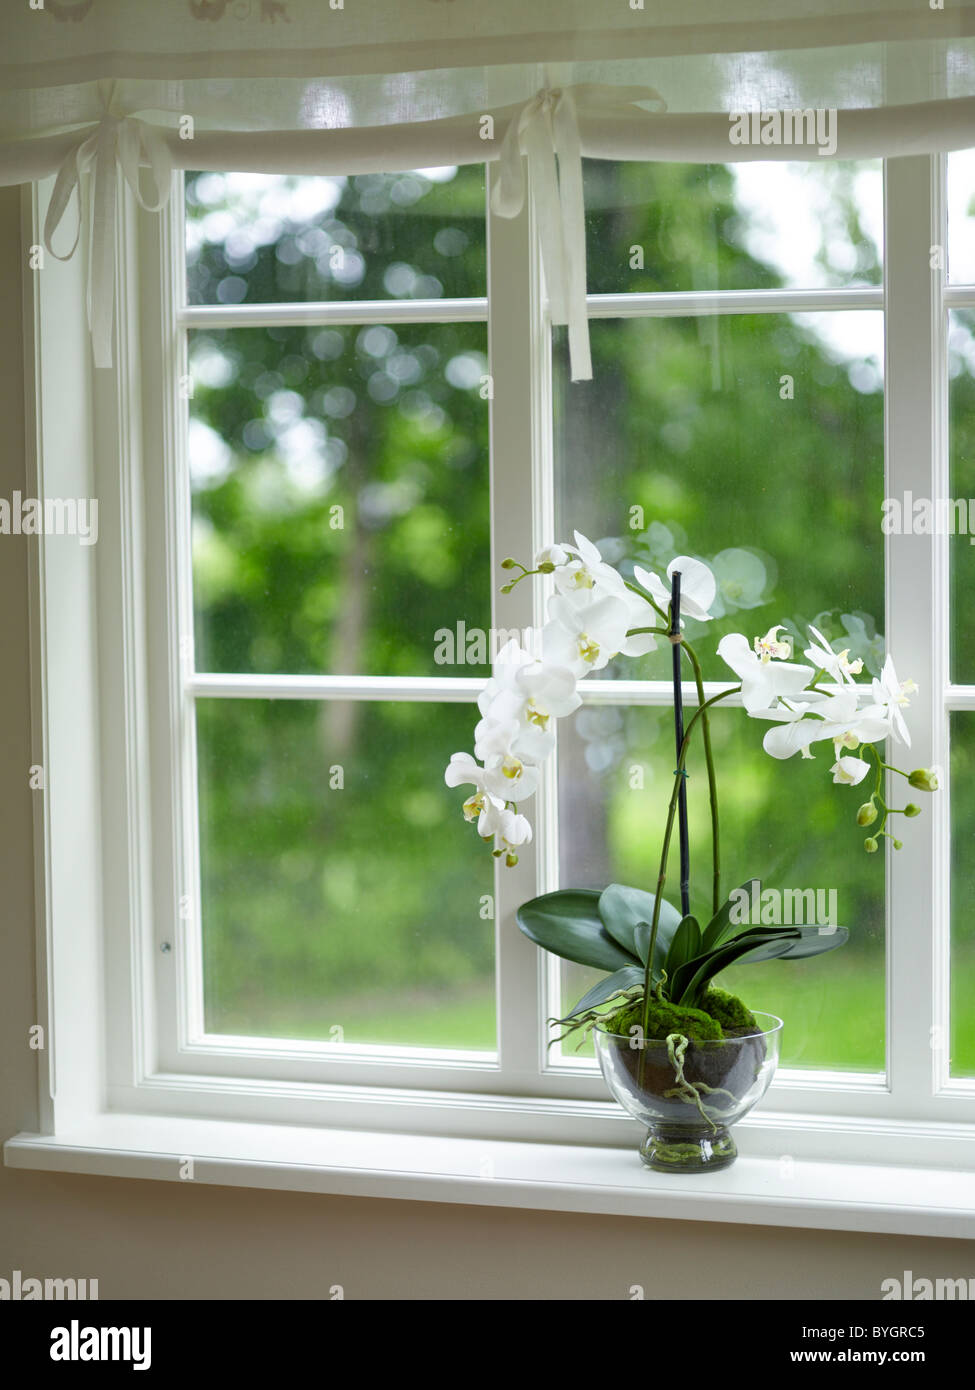 Topf-Blume auf der Fensterbank Stockfotografie - Alamy